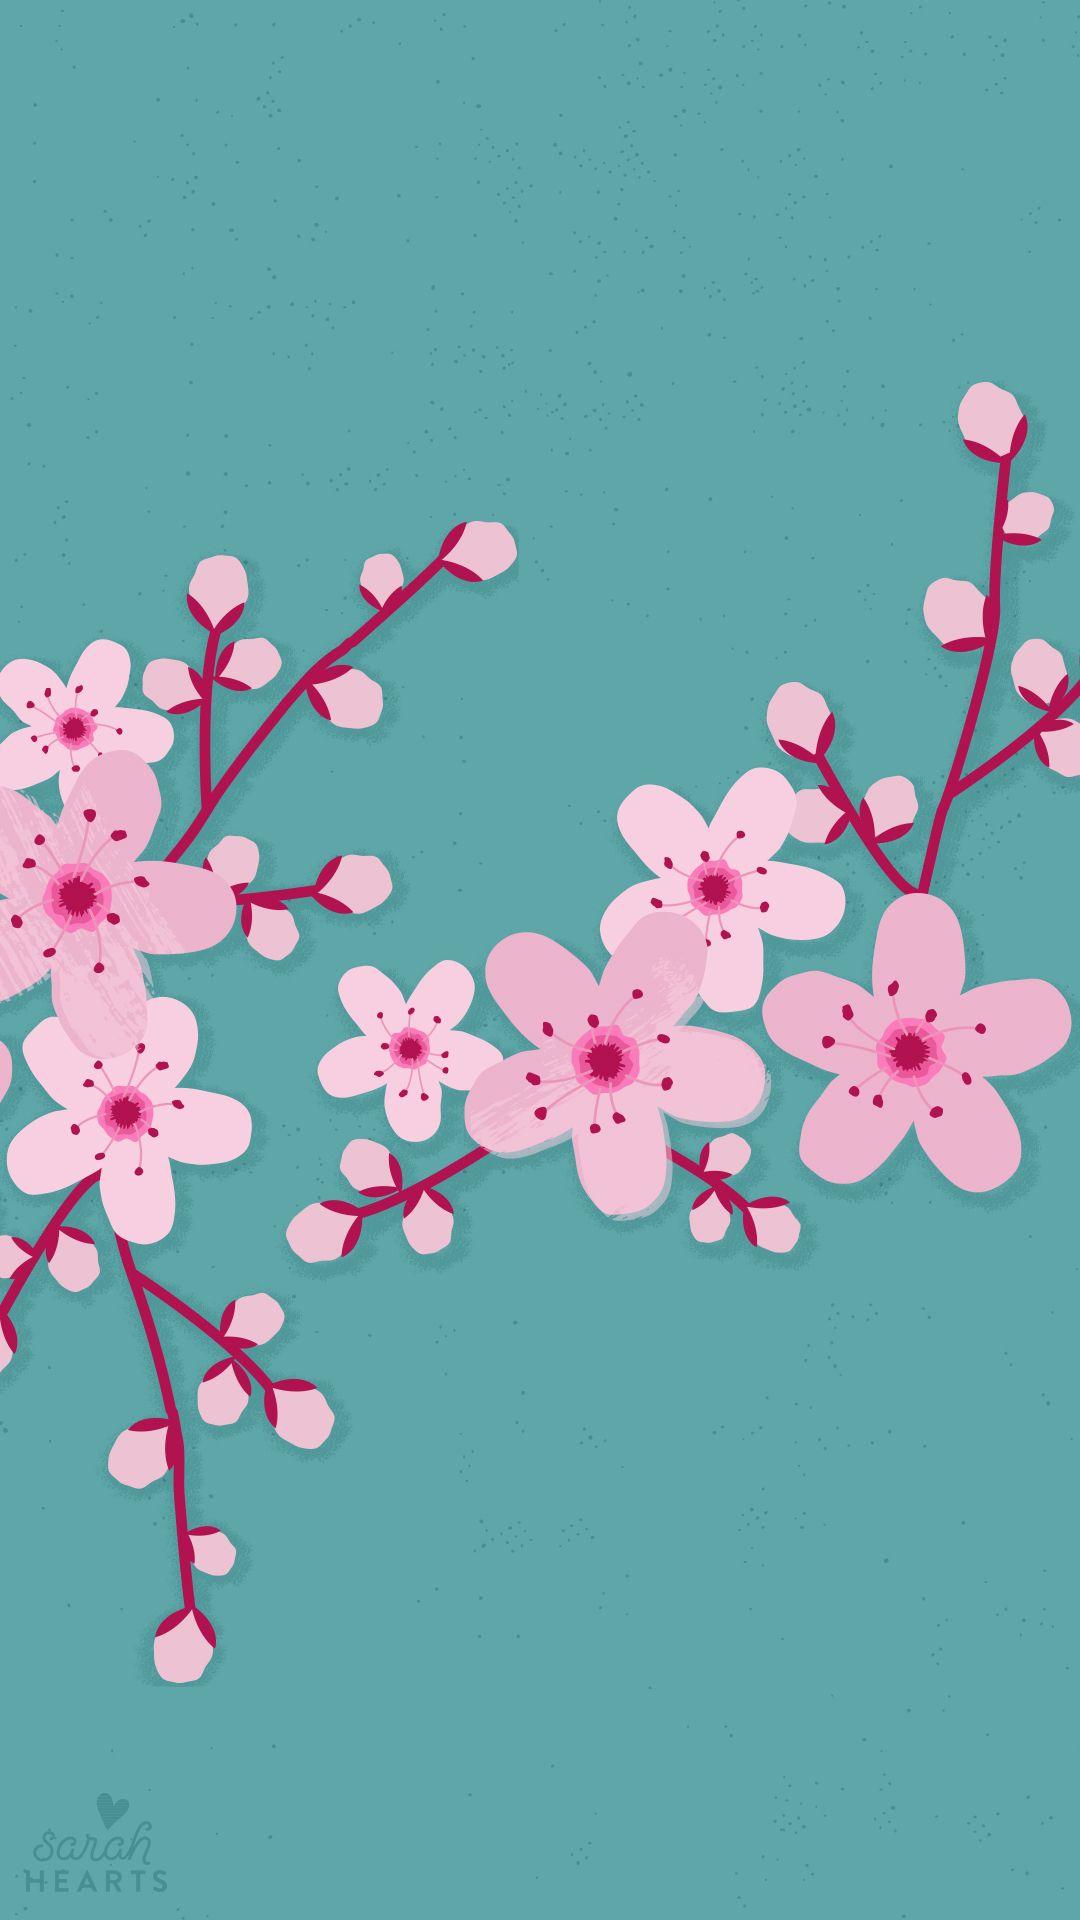 1080x1920 March 2016 Cherry Blossom Calendar Wallpaper